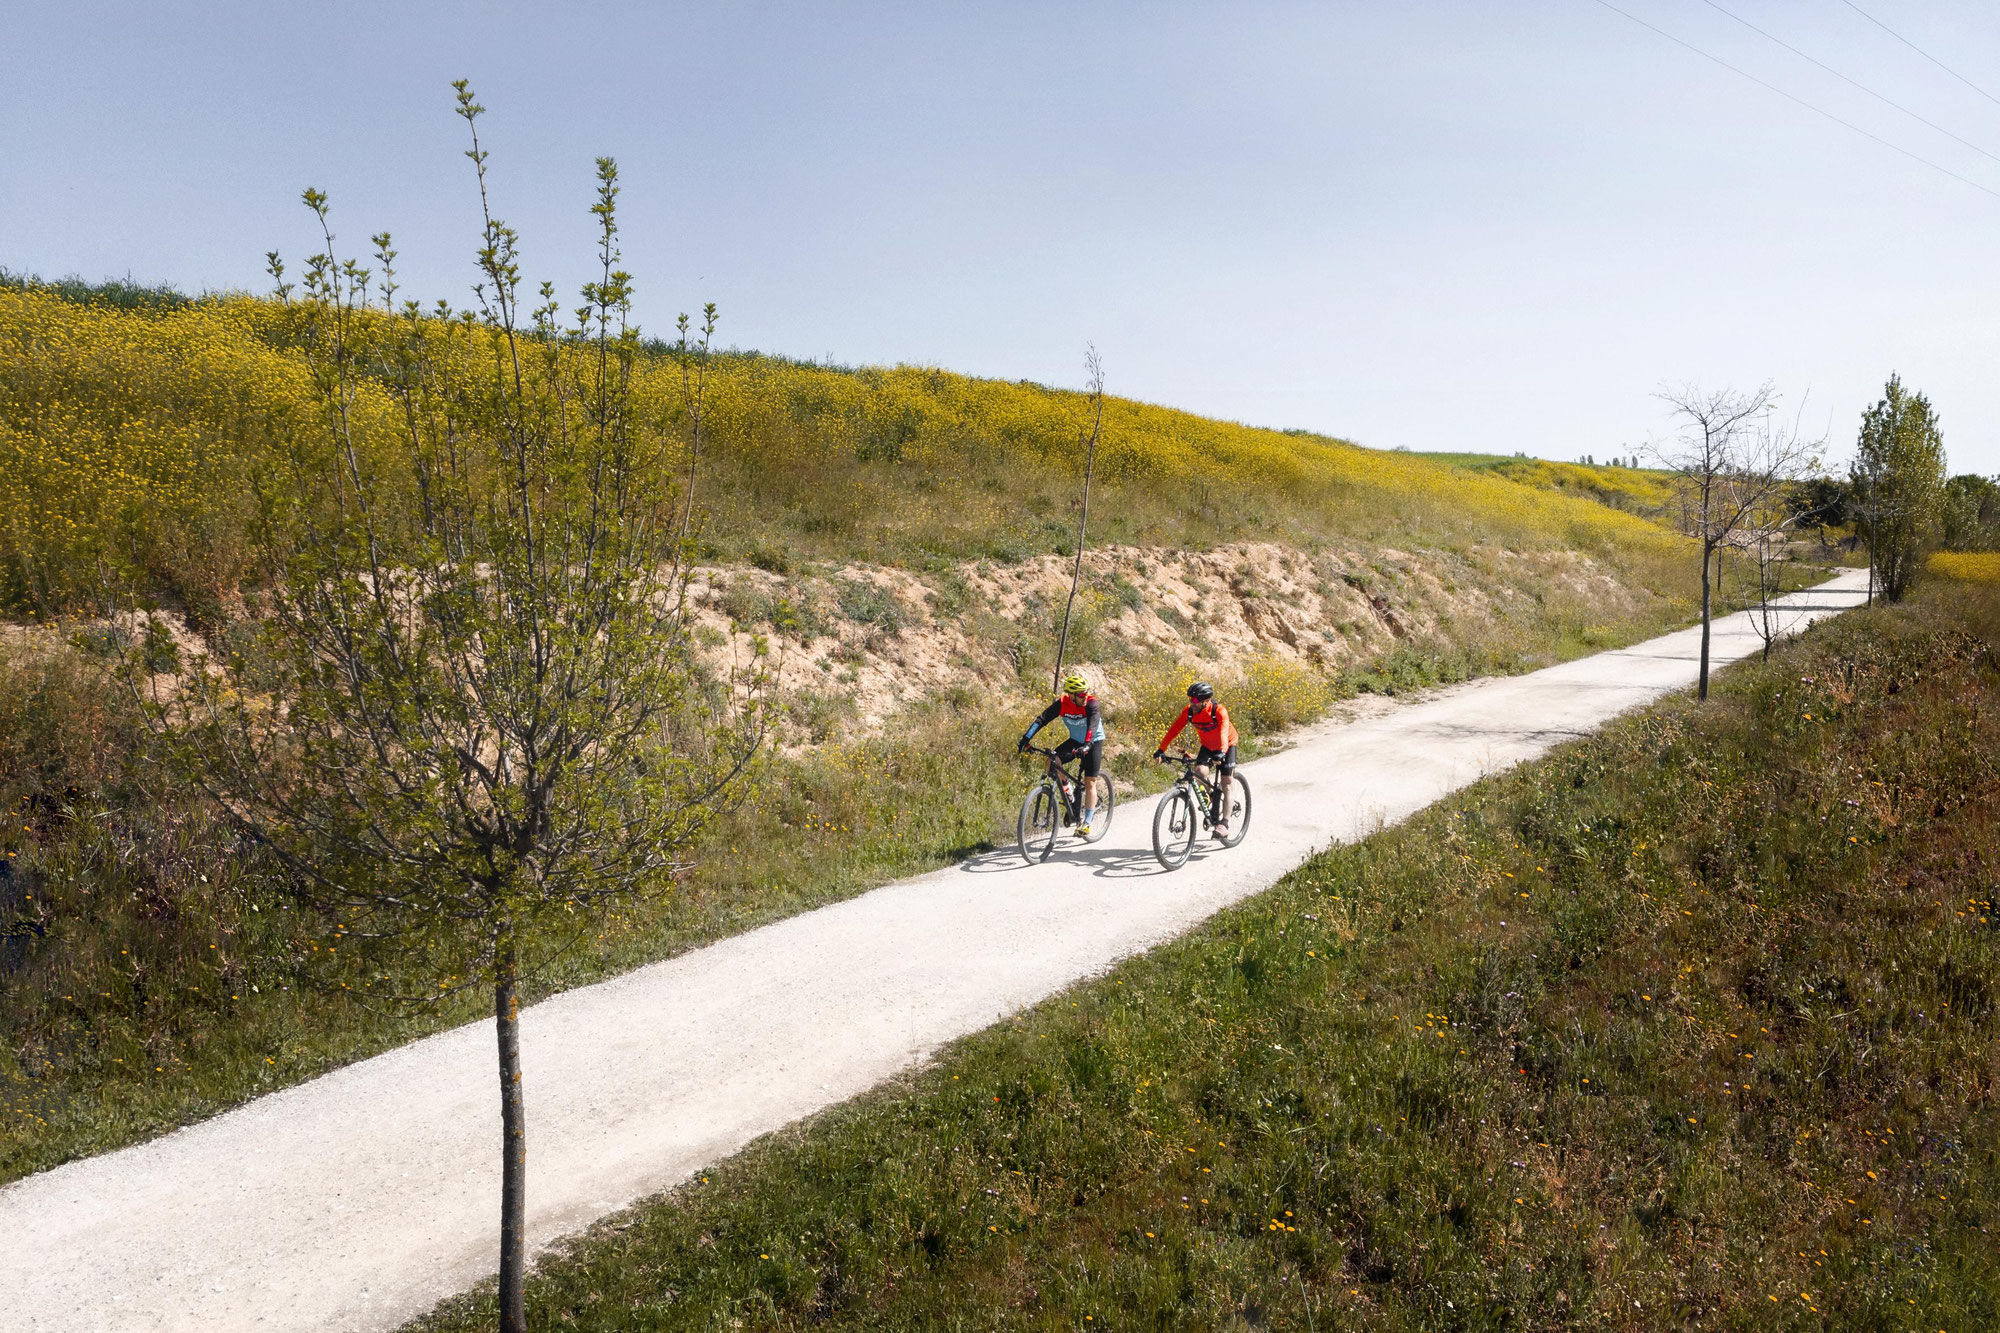 Noordwijk mit Fahrrad entdecken – 3 empfohlene Fahrradrouten